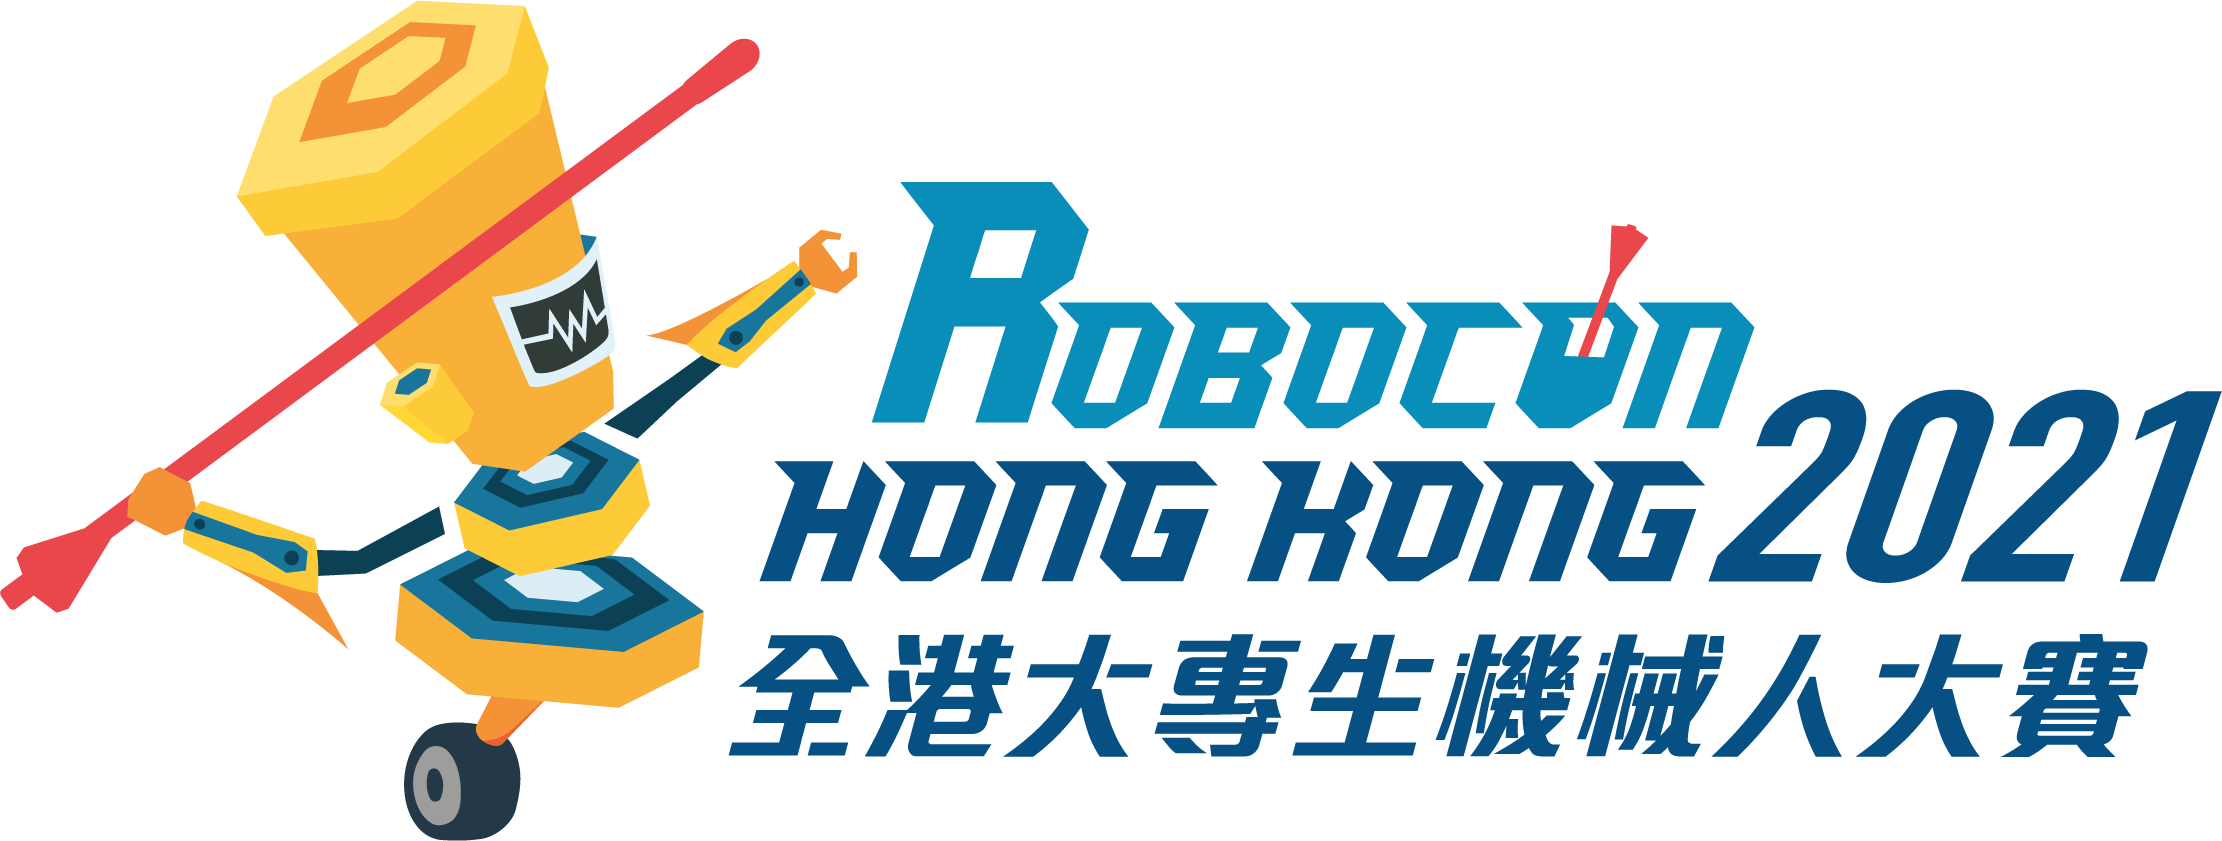 Robocon 2021 Hong Kong Contest